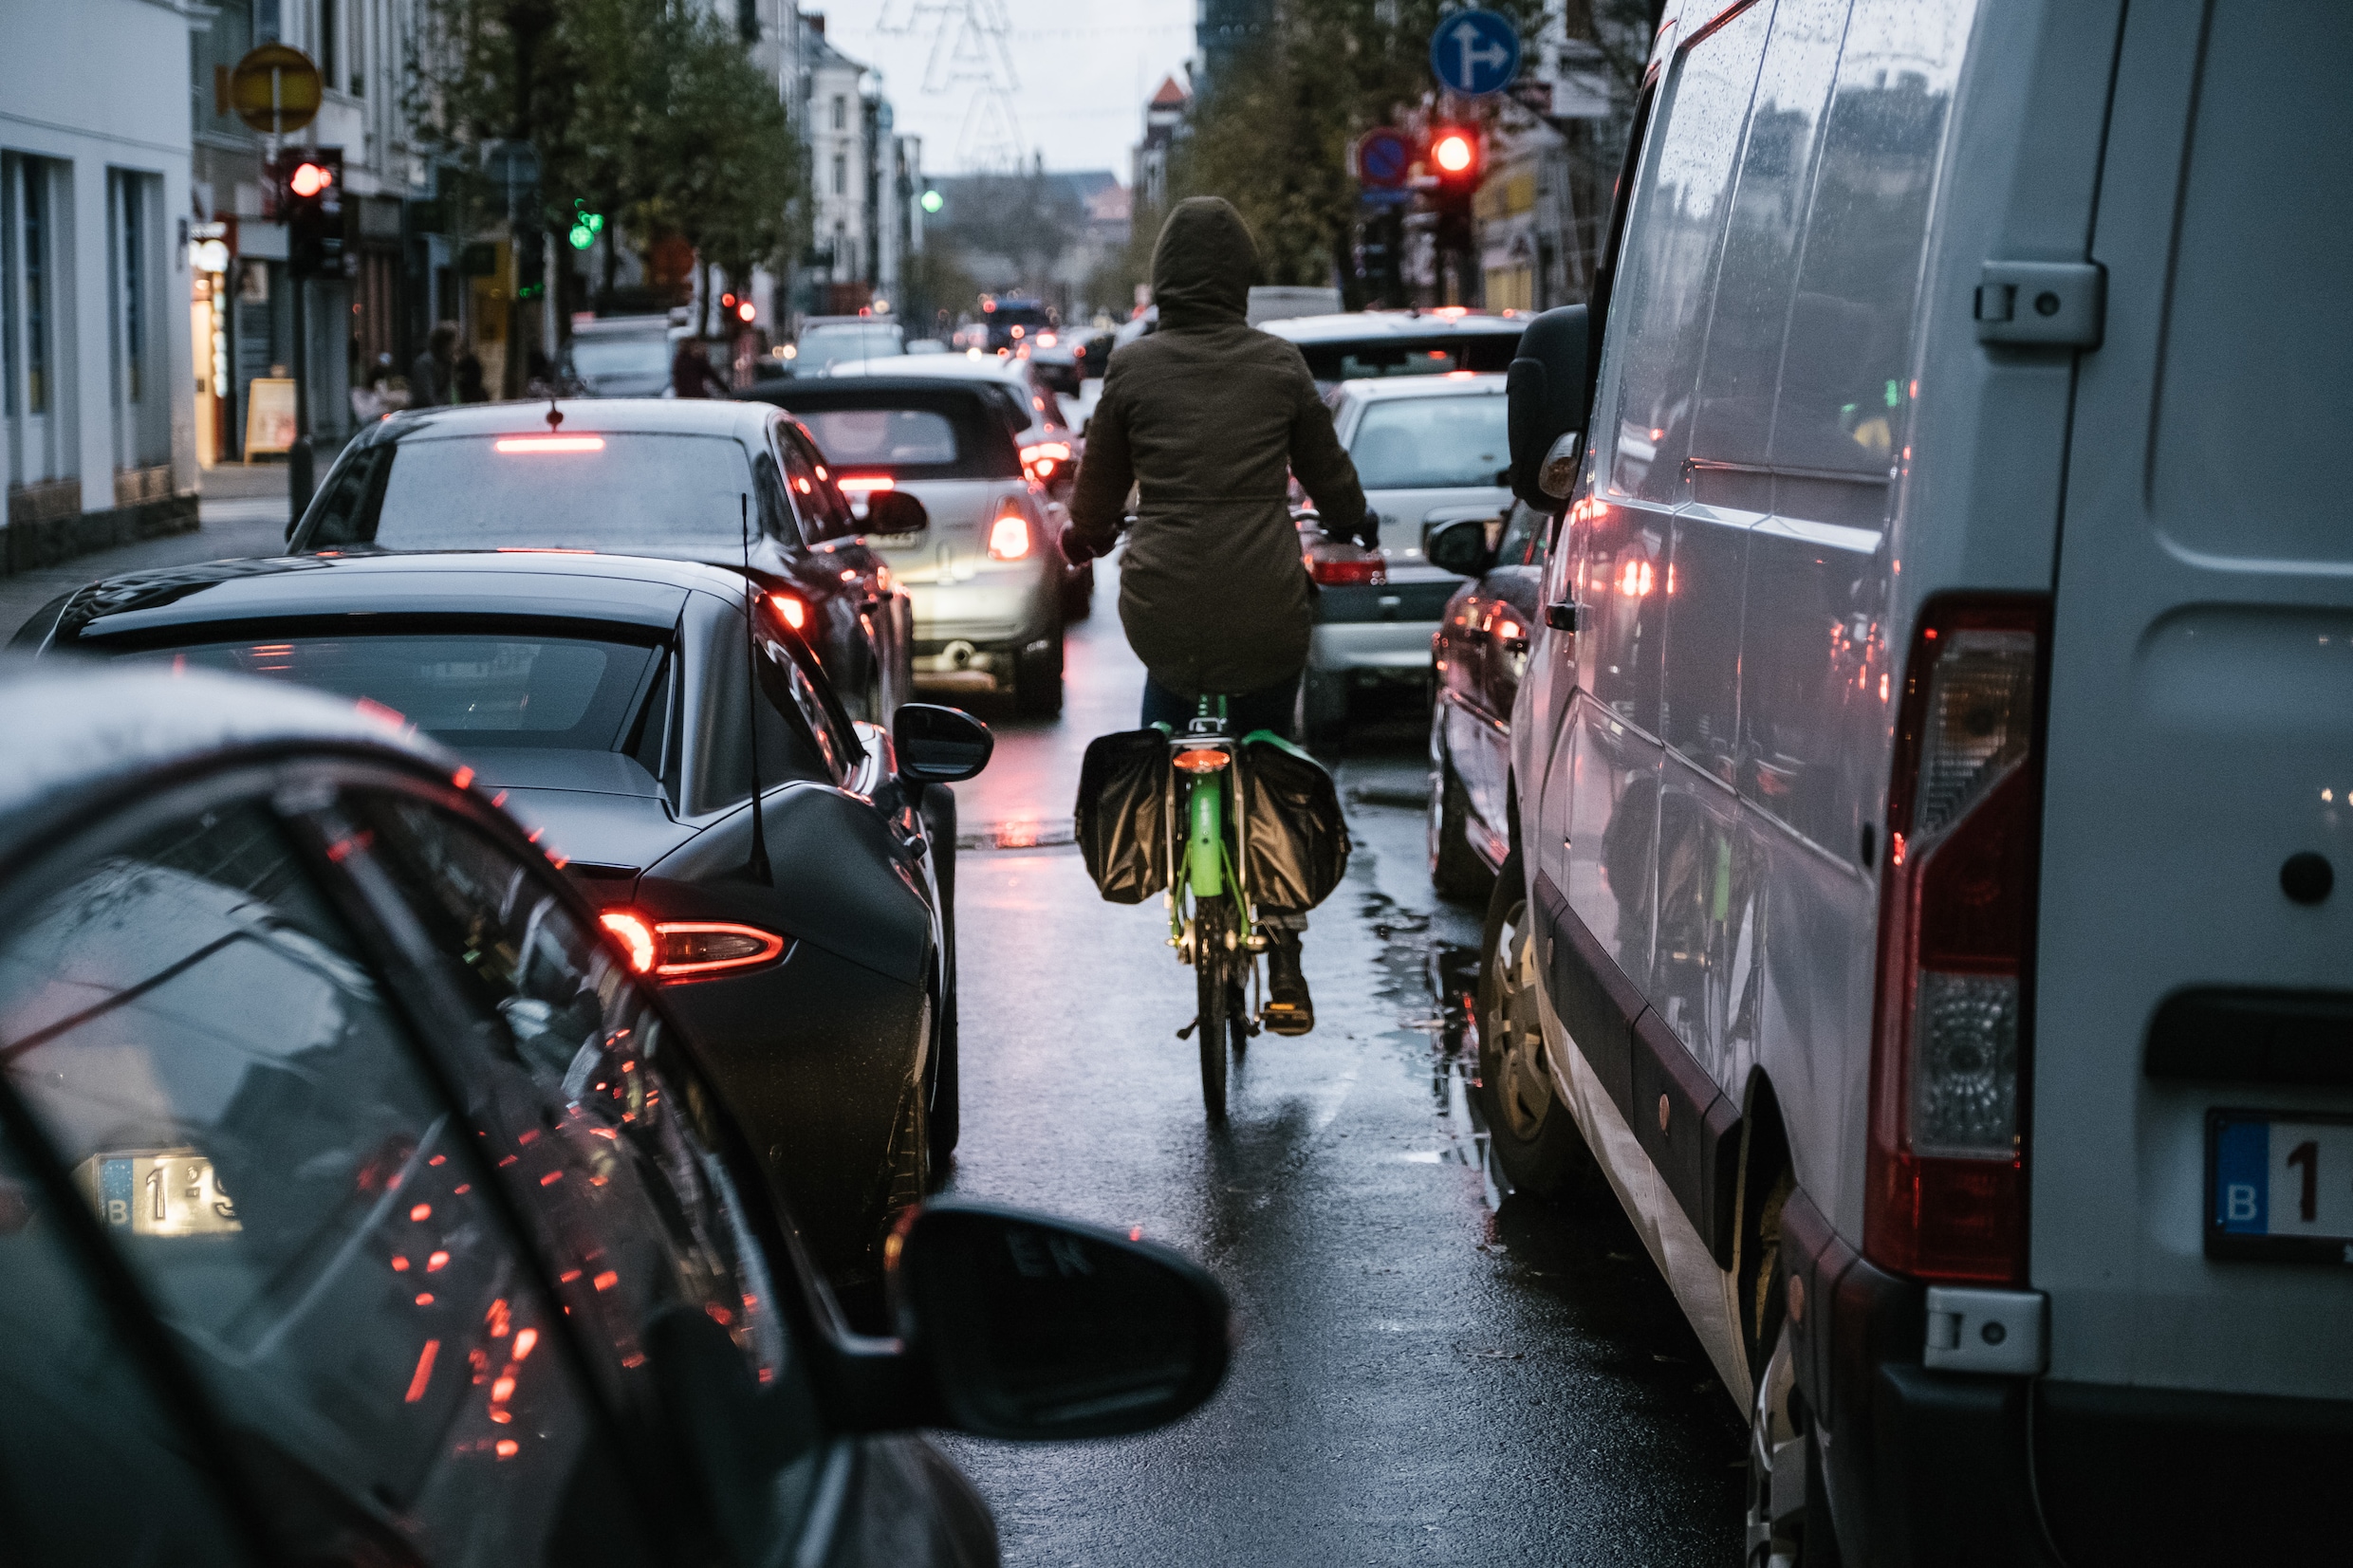 Antwerpenaar verkiest steeds meer fiets en deelmobiliteit boven eigen wagen